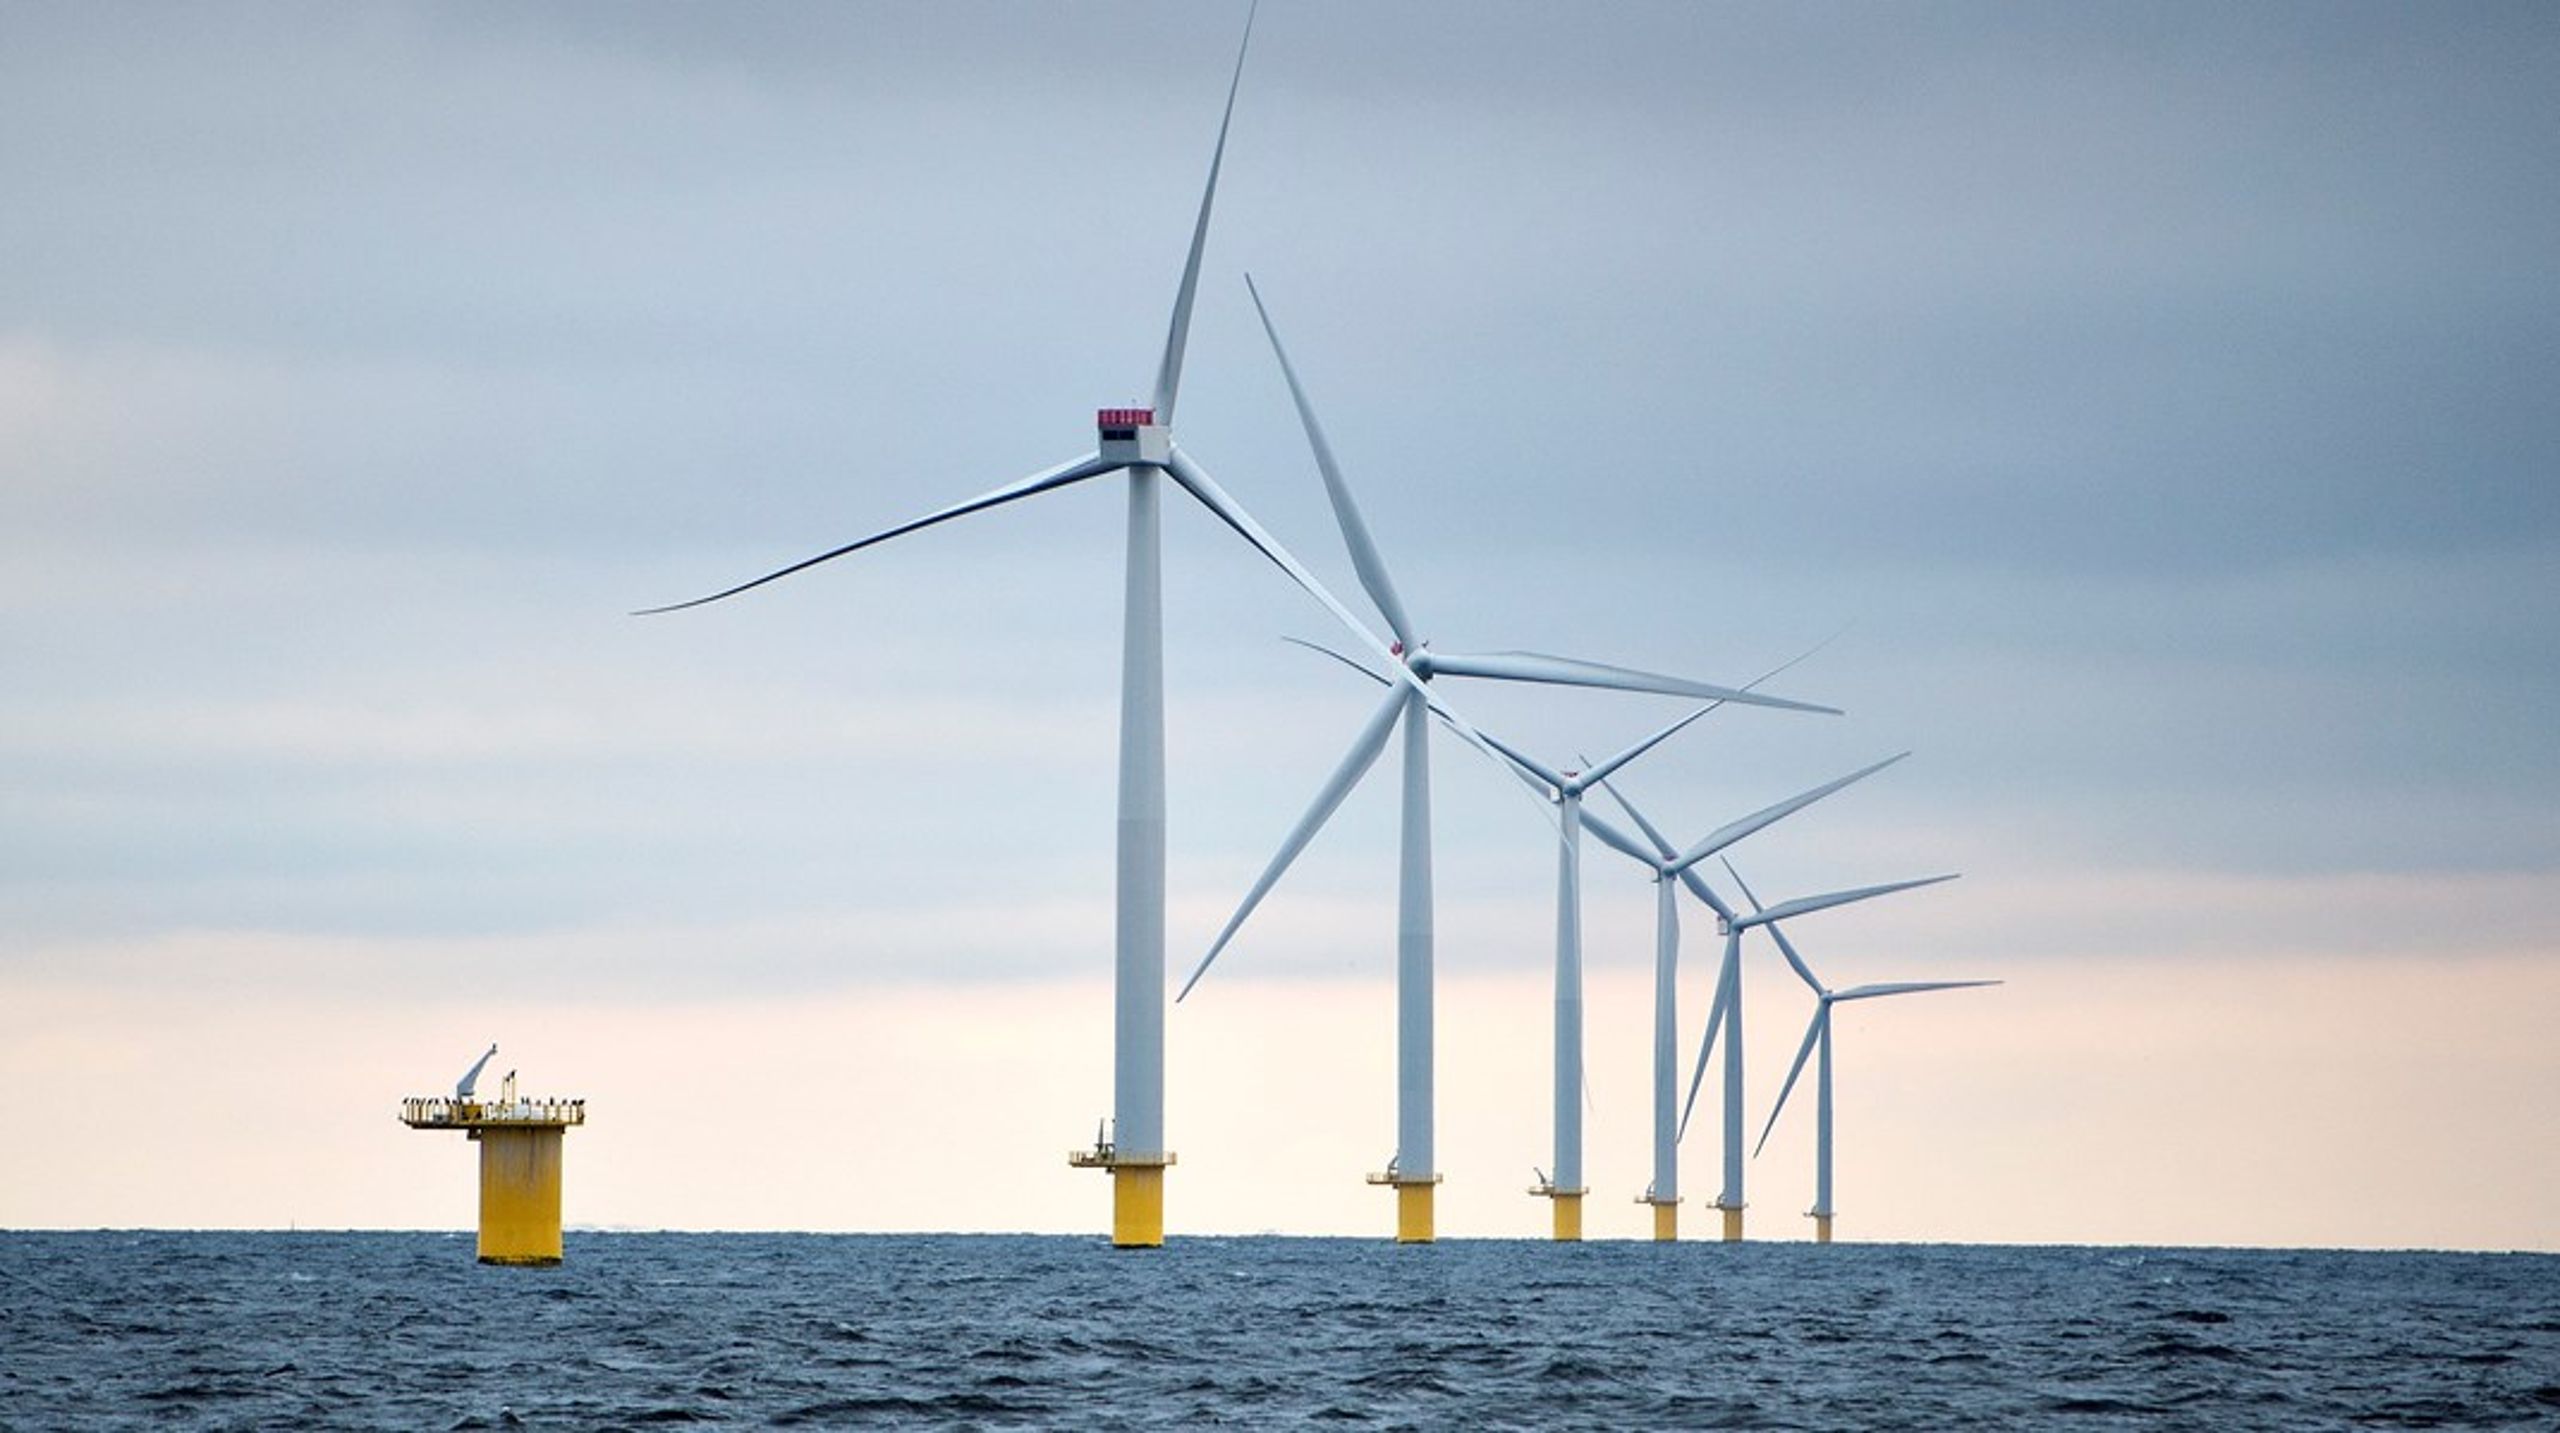 Danmark har satset massivt på havvindmøller og energiøer, derfor bør vi diskutere, hvordan vi bedst udvinder overskudsenergien, skriver Johan Andersen-Ranberg, Birger Lindberg Møller, Nanna Heinz og Poul Erik Jensen.